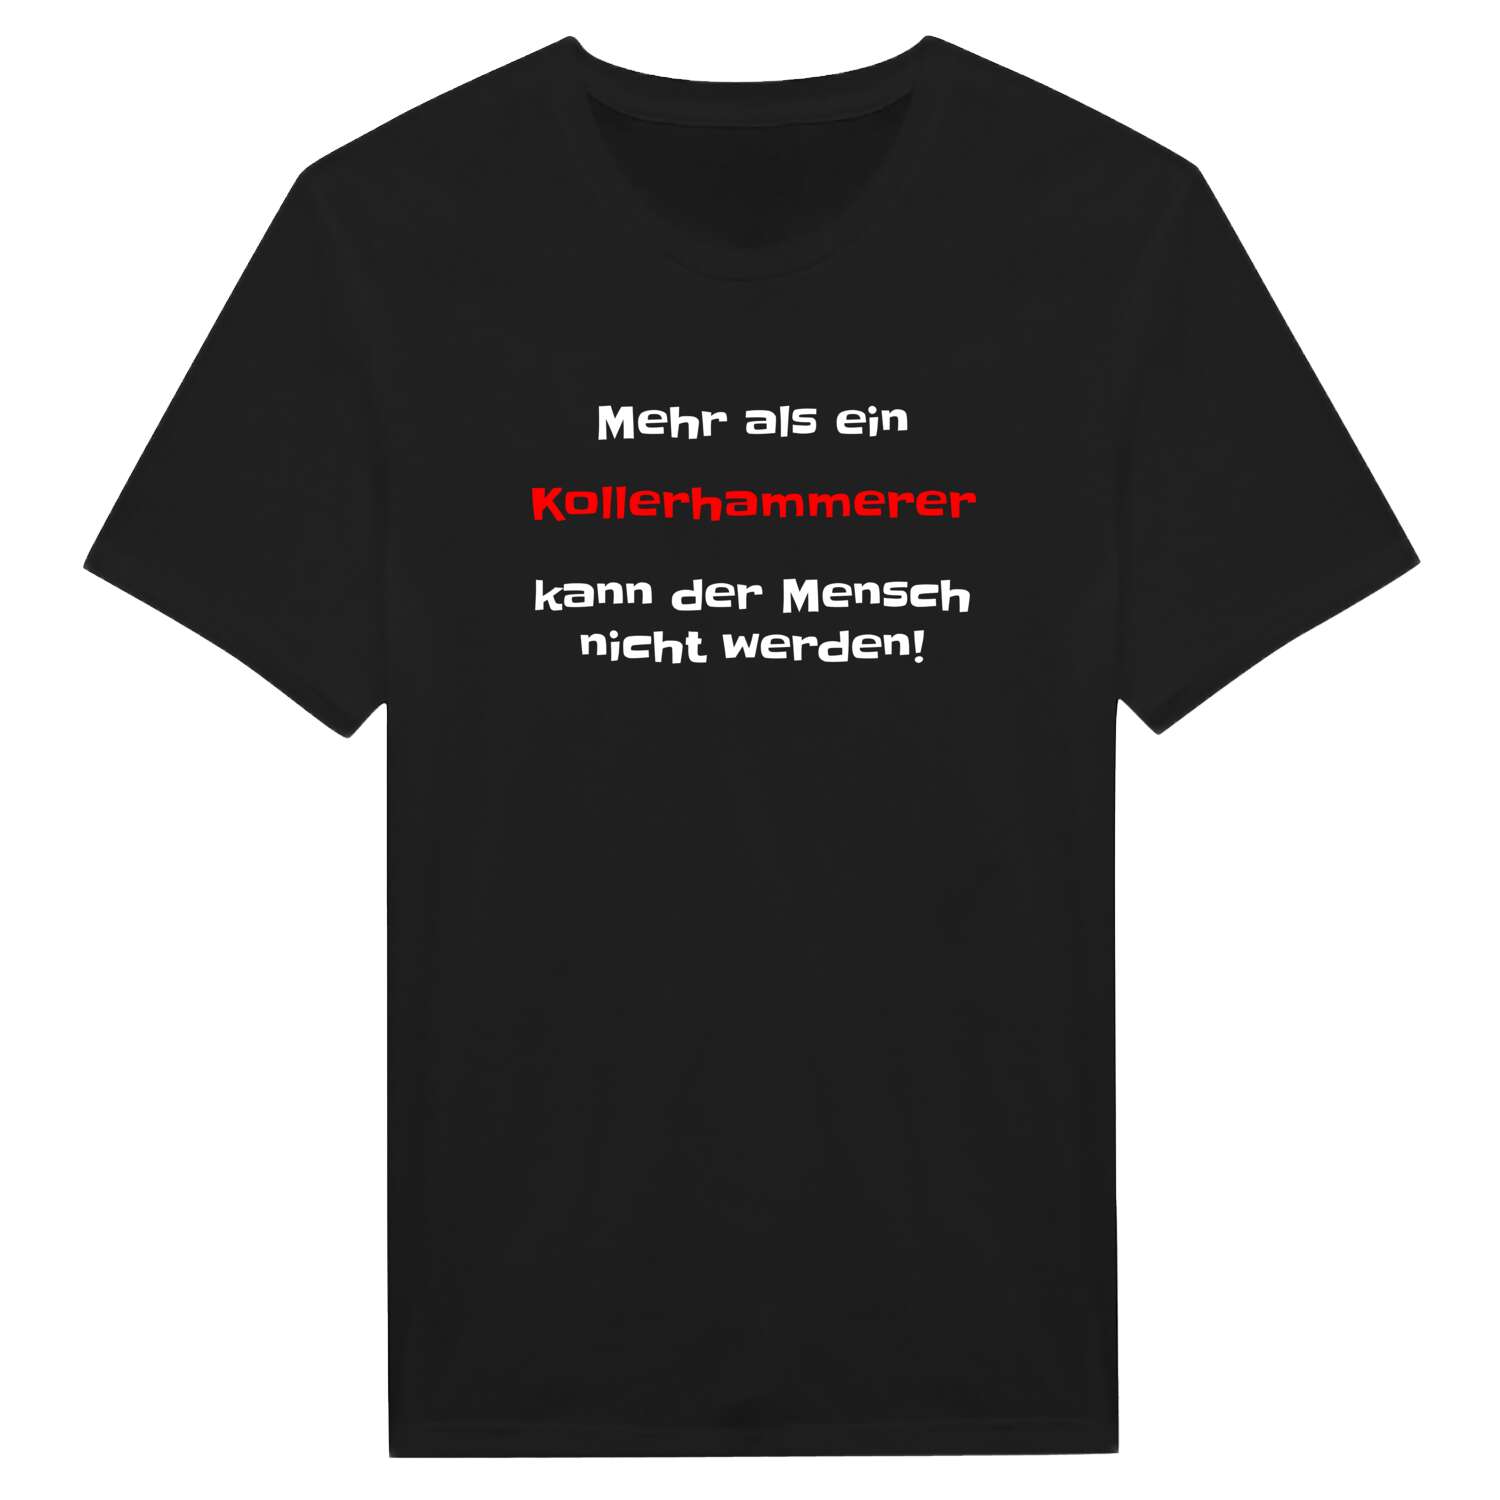 Kollerhammer T-Shirt »Mehr als ein«